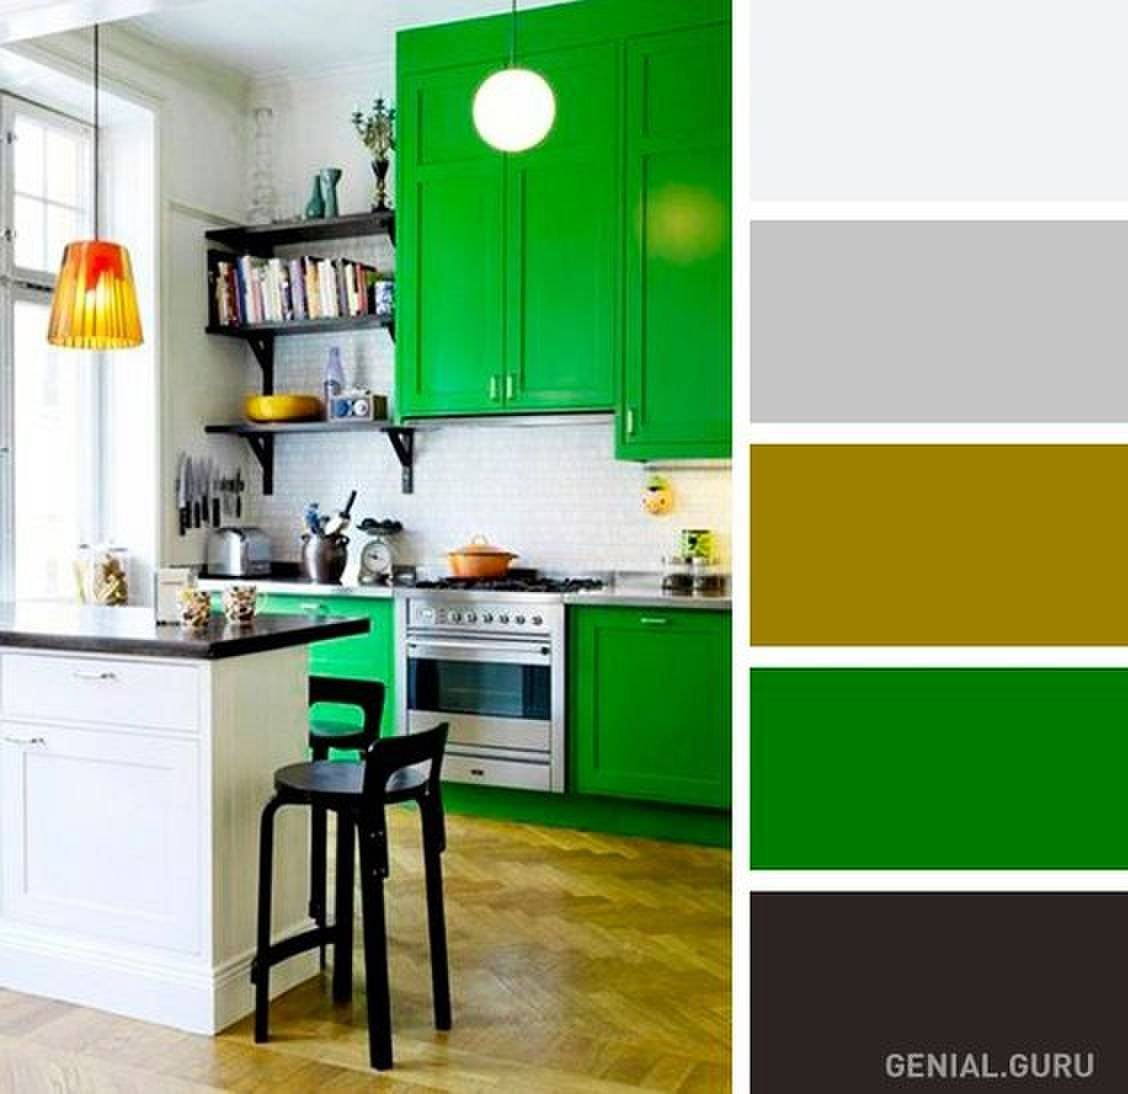 Правильное сочетание цветов в интерьере кухни: коричневый, оранжевый, зеленый + фото